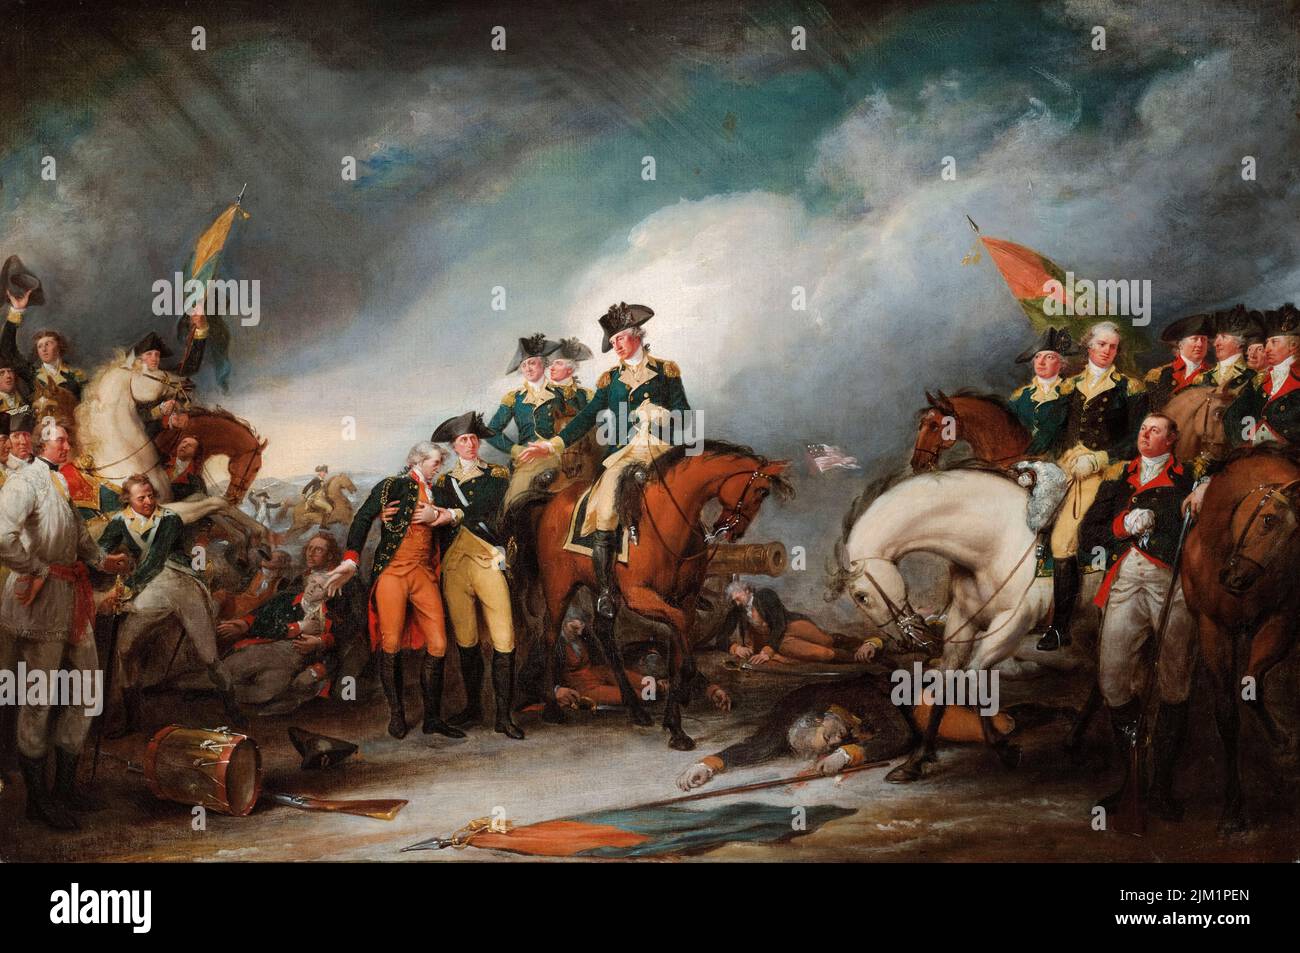 La capture des Hessiens à Trenton, 26 décembre 1776, peinture à l'huile sur toile par John Trumbull, 1786-1828 Banque D'Images